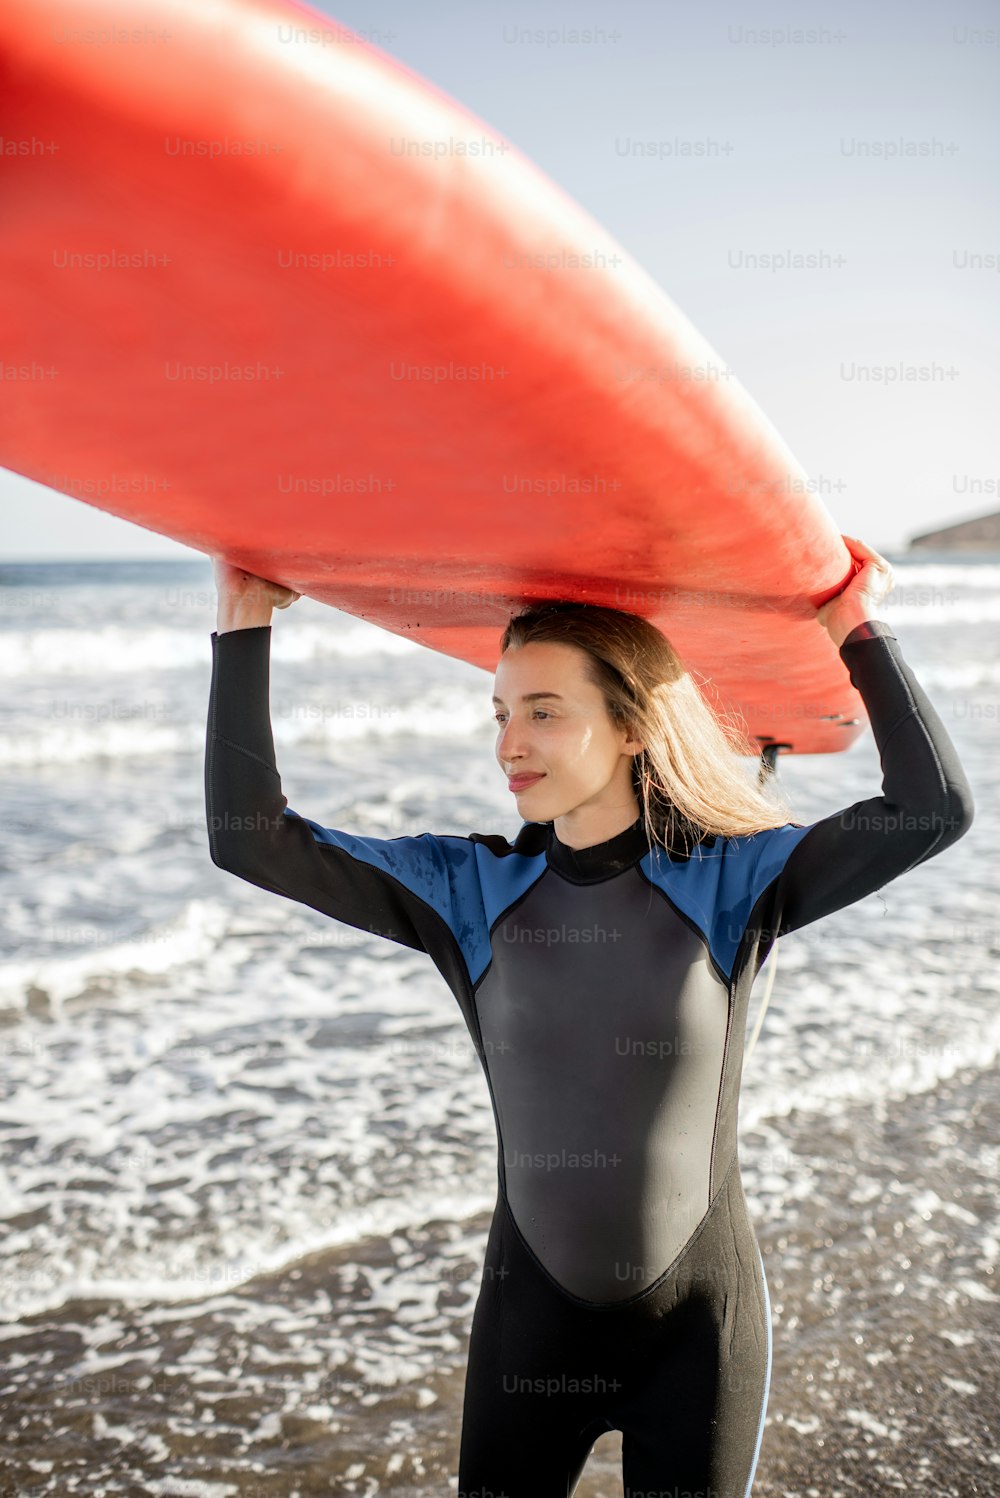 잠수복을 입은 젊은 여성의 초상화는 머리 위로 서보드를 들고 일몰에 야생 해변에서 서핑을 준비합니다. 활동적인 라이프 스타일 개념